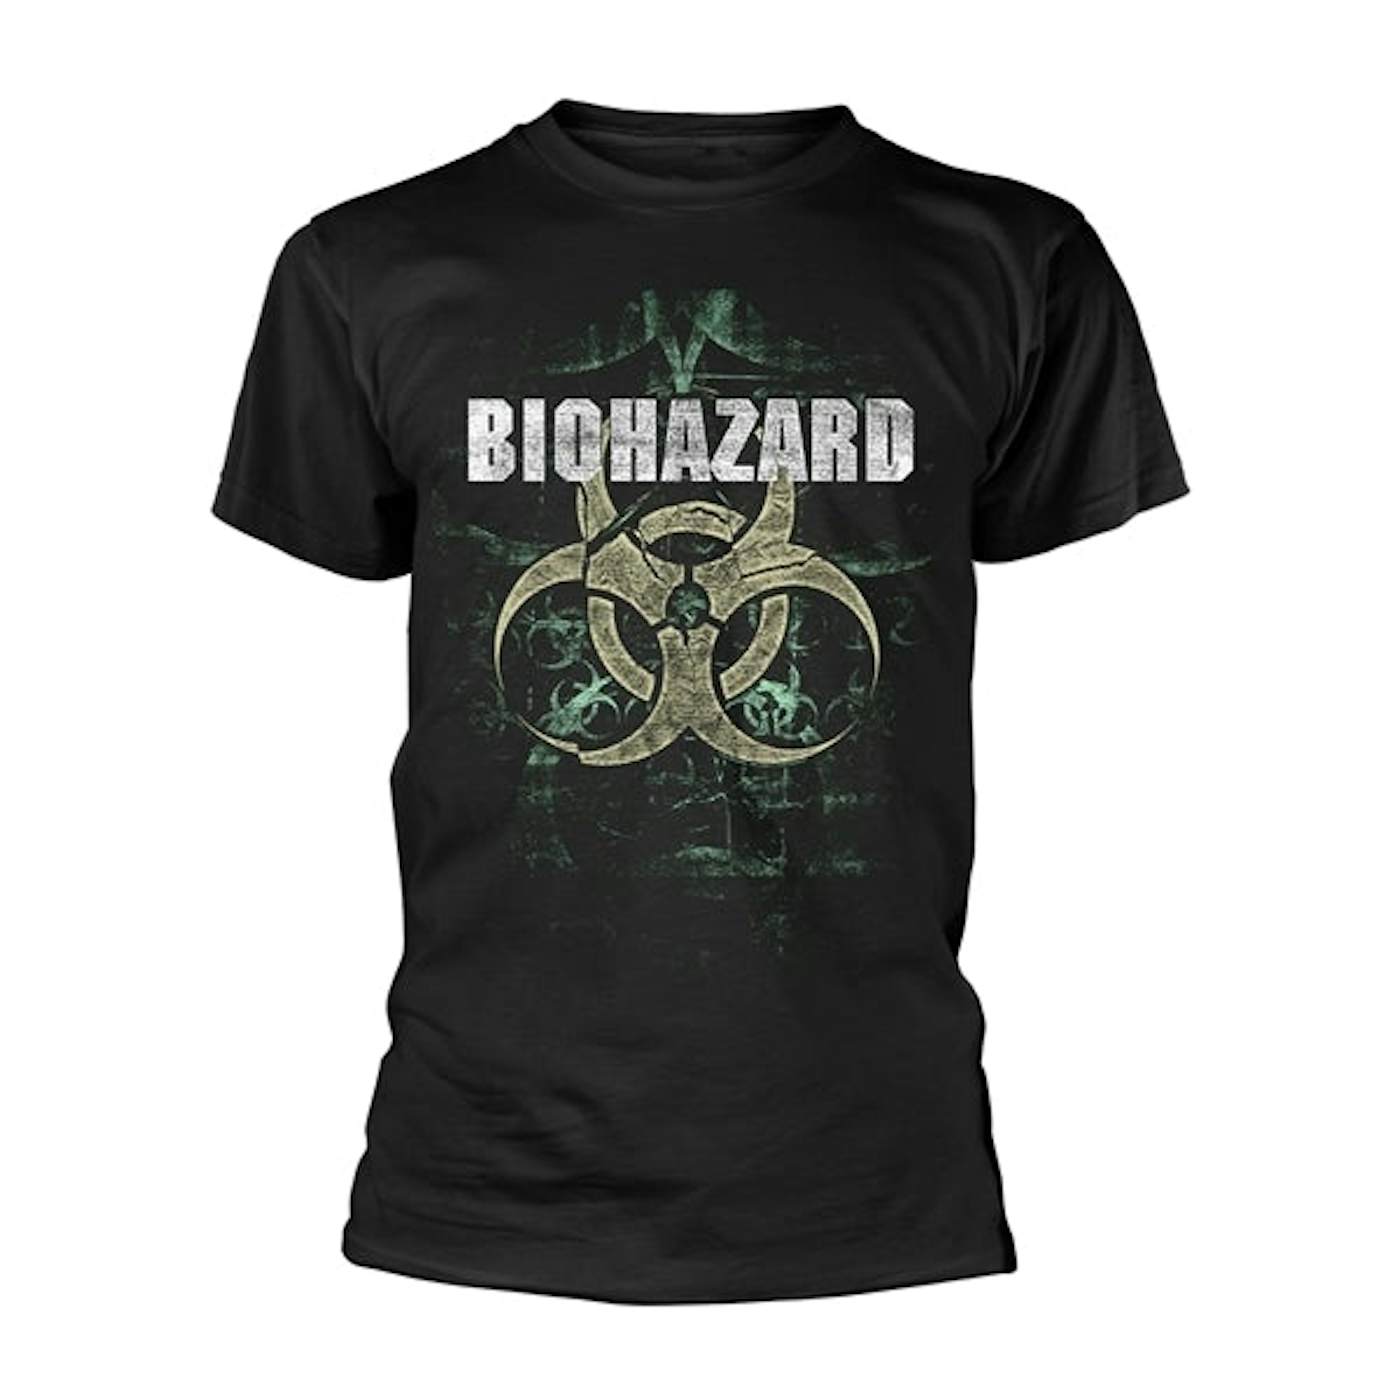 Biohazard T-Shirt - We Share The Knife